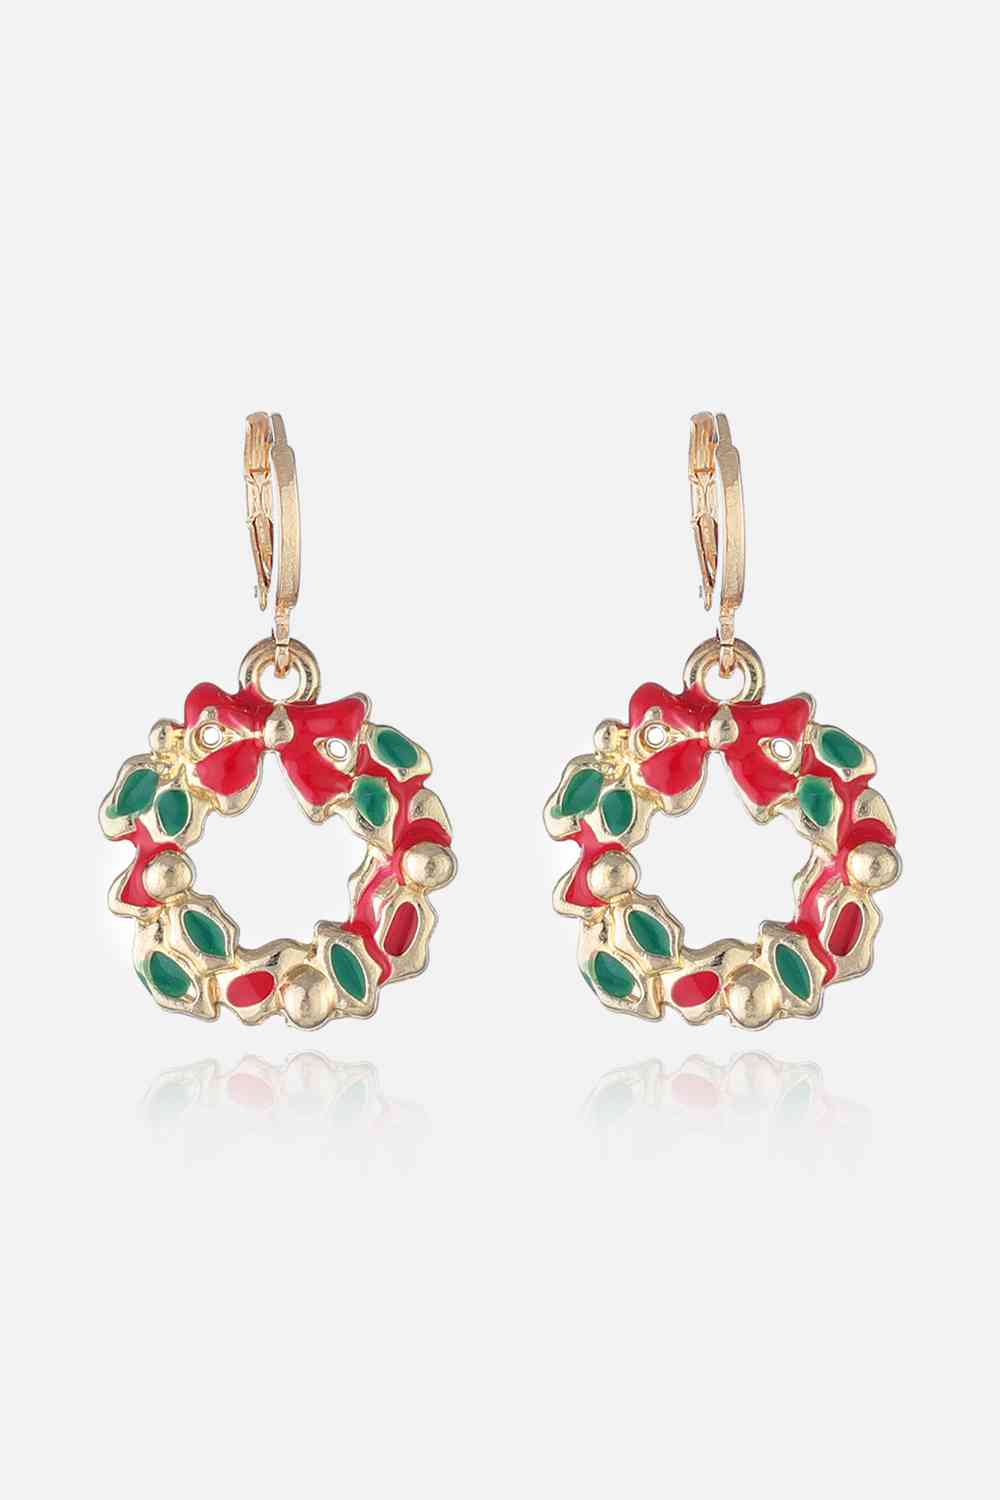 Christmas Theme Alloy Earrings - Style C / One Size - Women’s Jewelry - Earrings - 16 - 2024